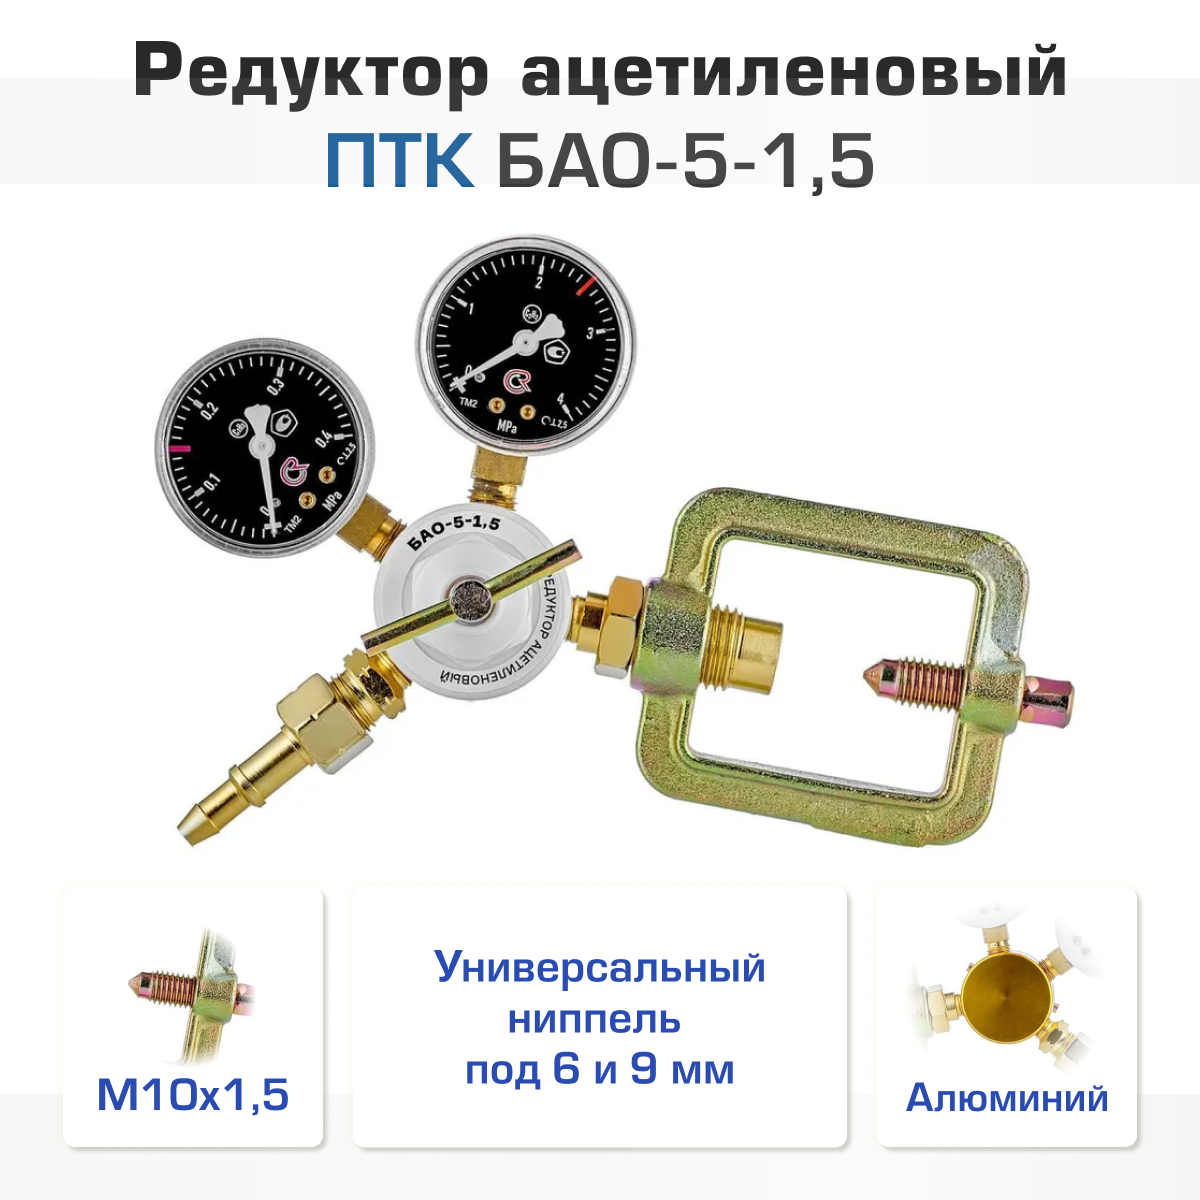 Редуктор ацетиленовый ПТК БАО-5-15